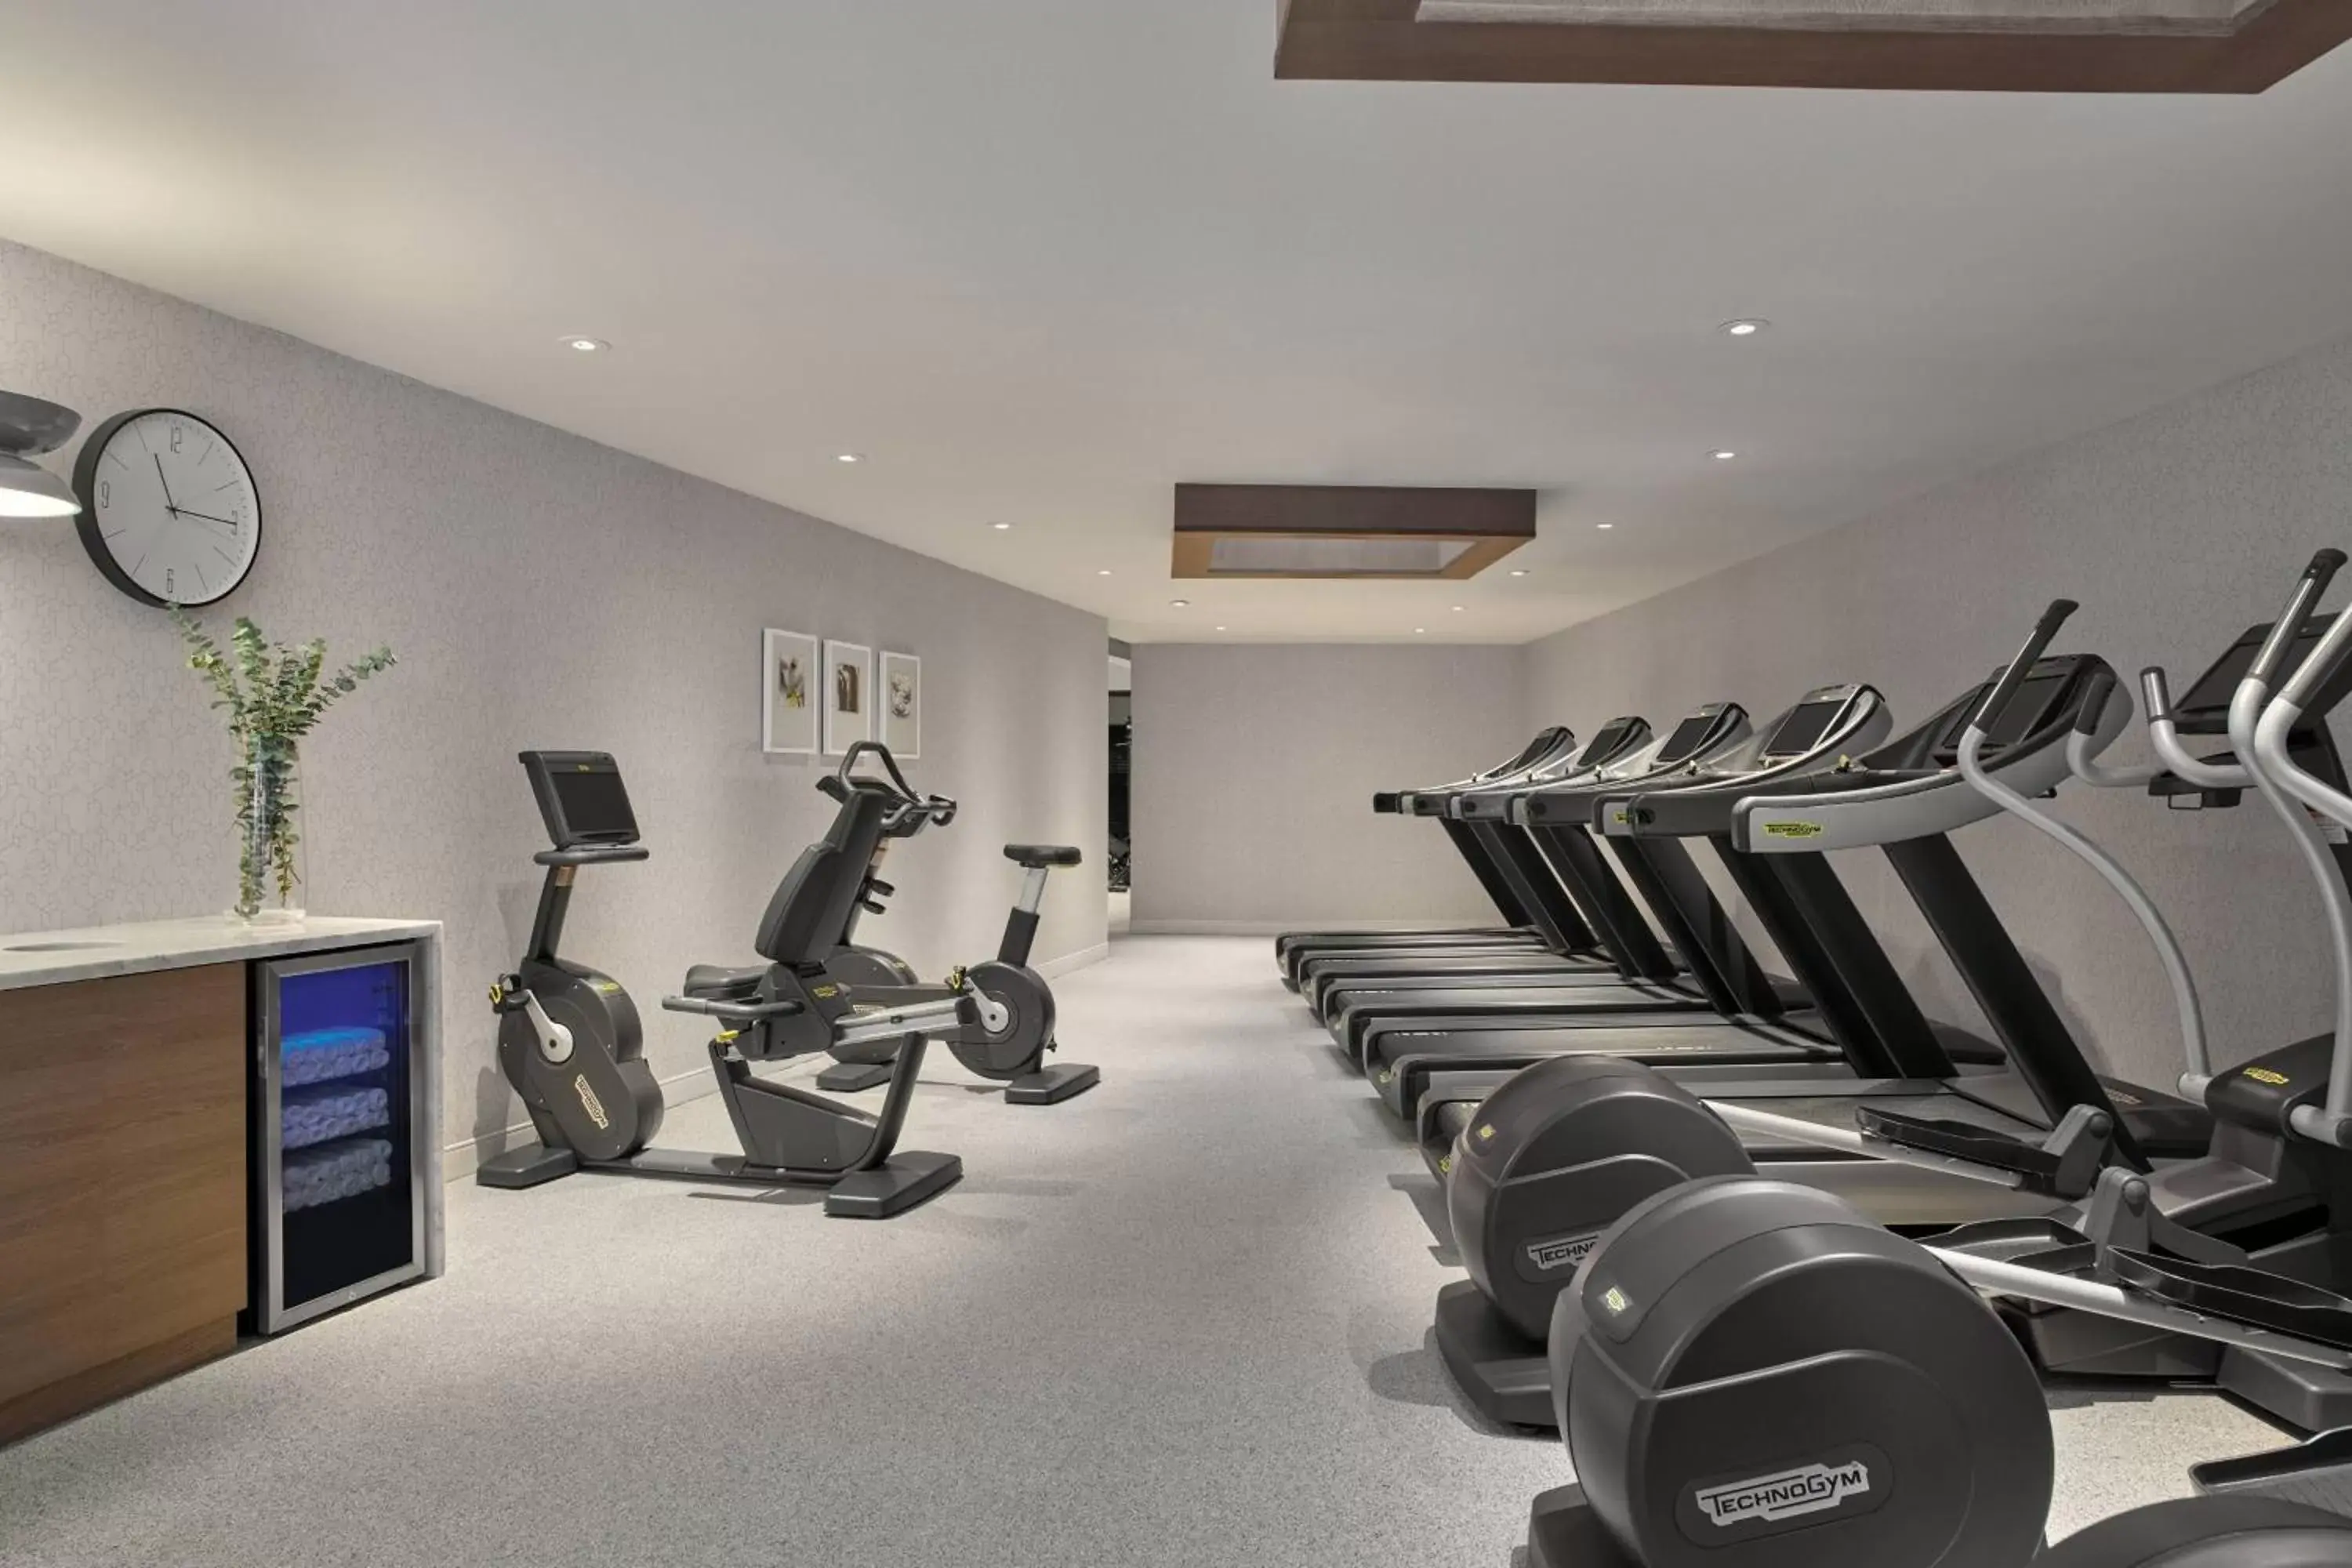 Fitness centre/facilities, Fitness Center/Facilities in Delta Hotels by Marriott Denver Thornton